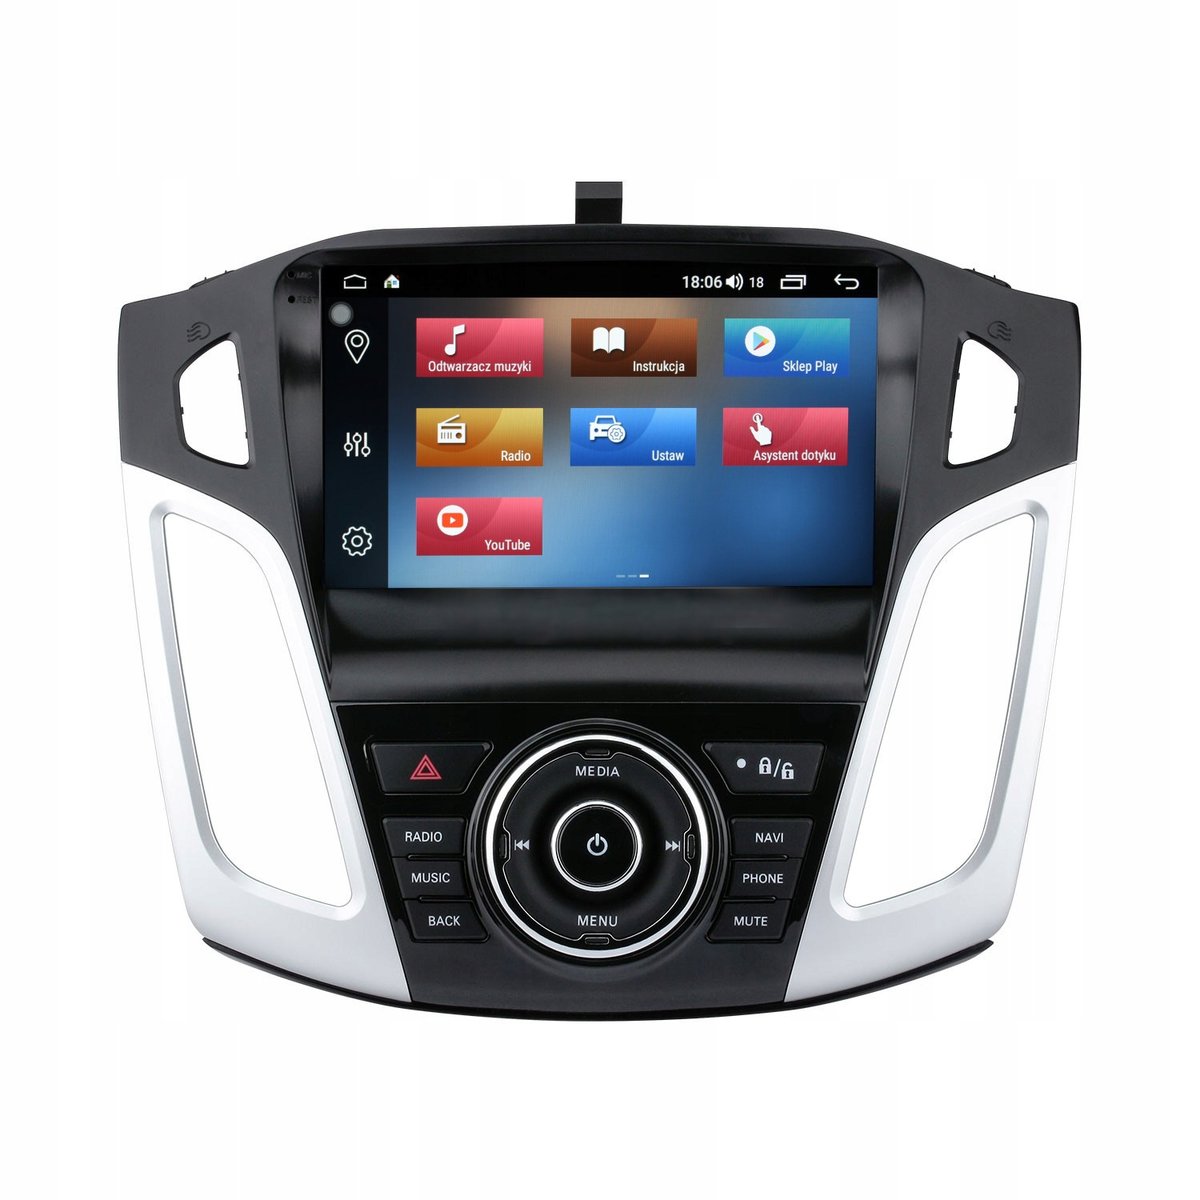 Zdjęcia - Radio samochodowe Radionawigacja Gps Ford Focus -2018 Android 2012